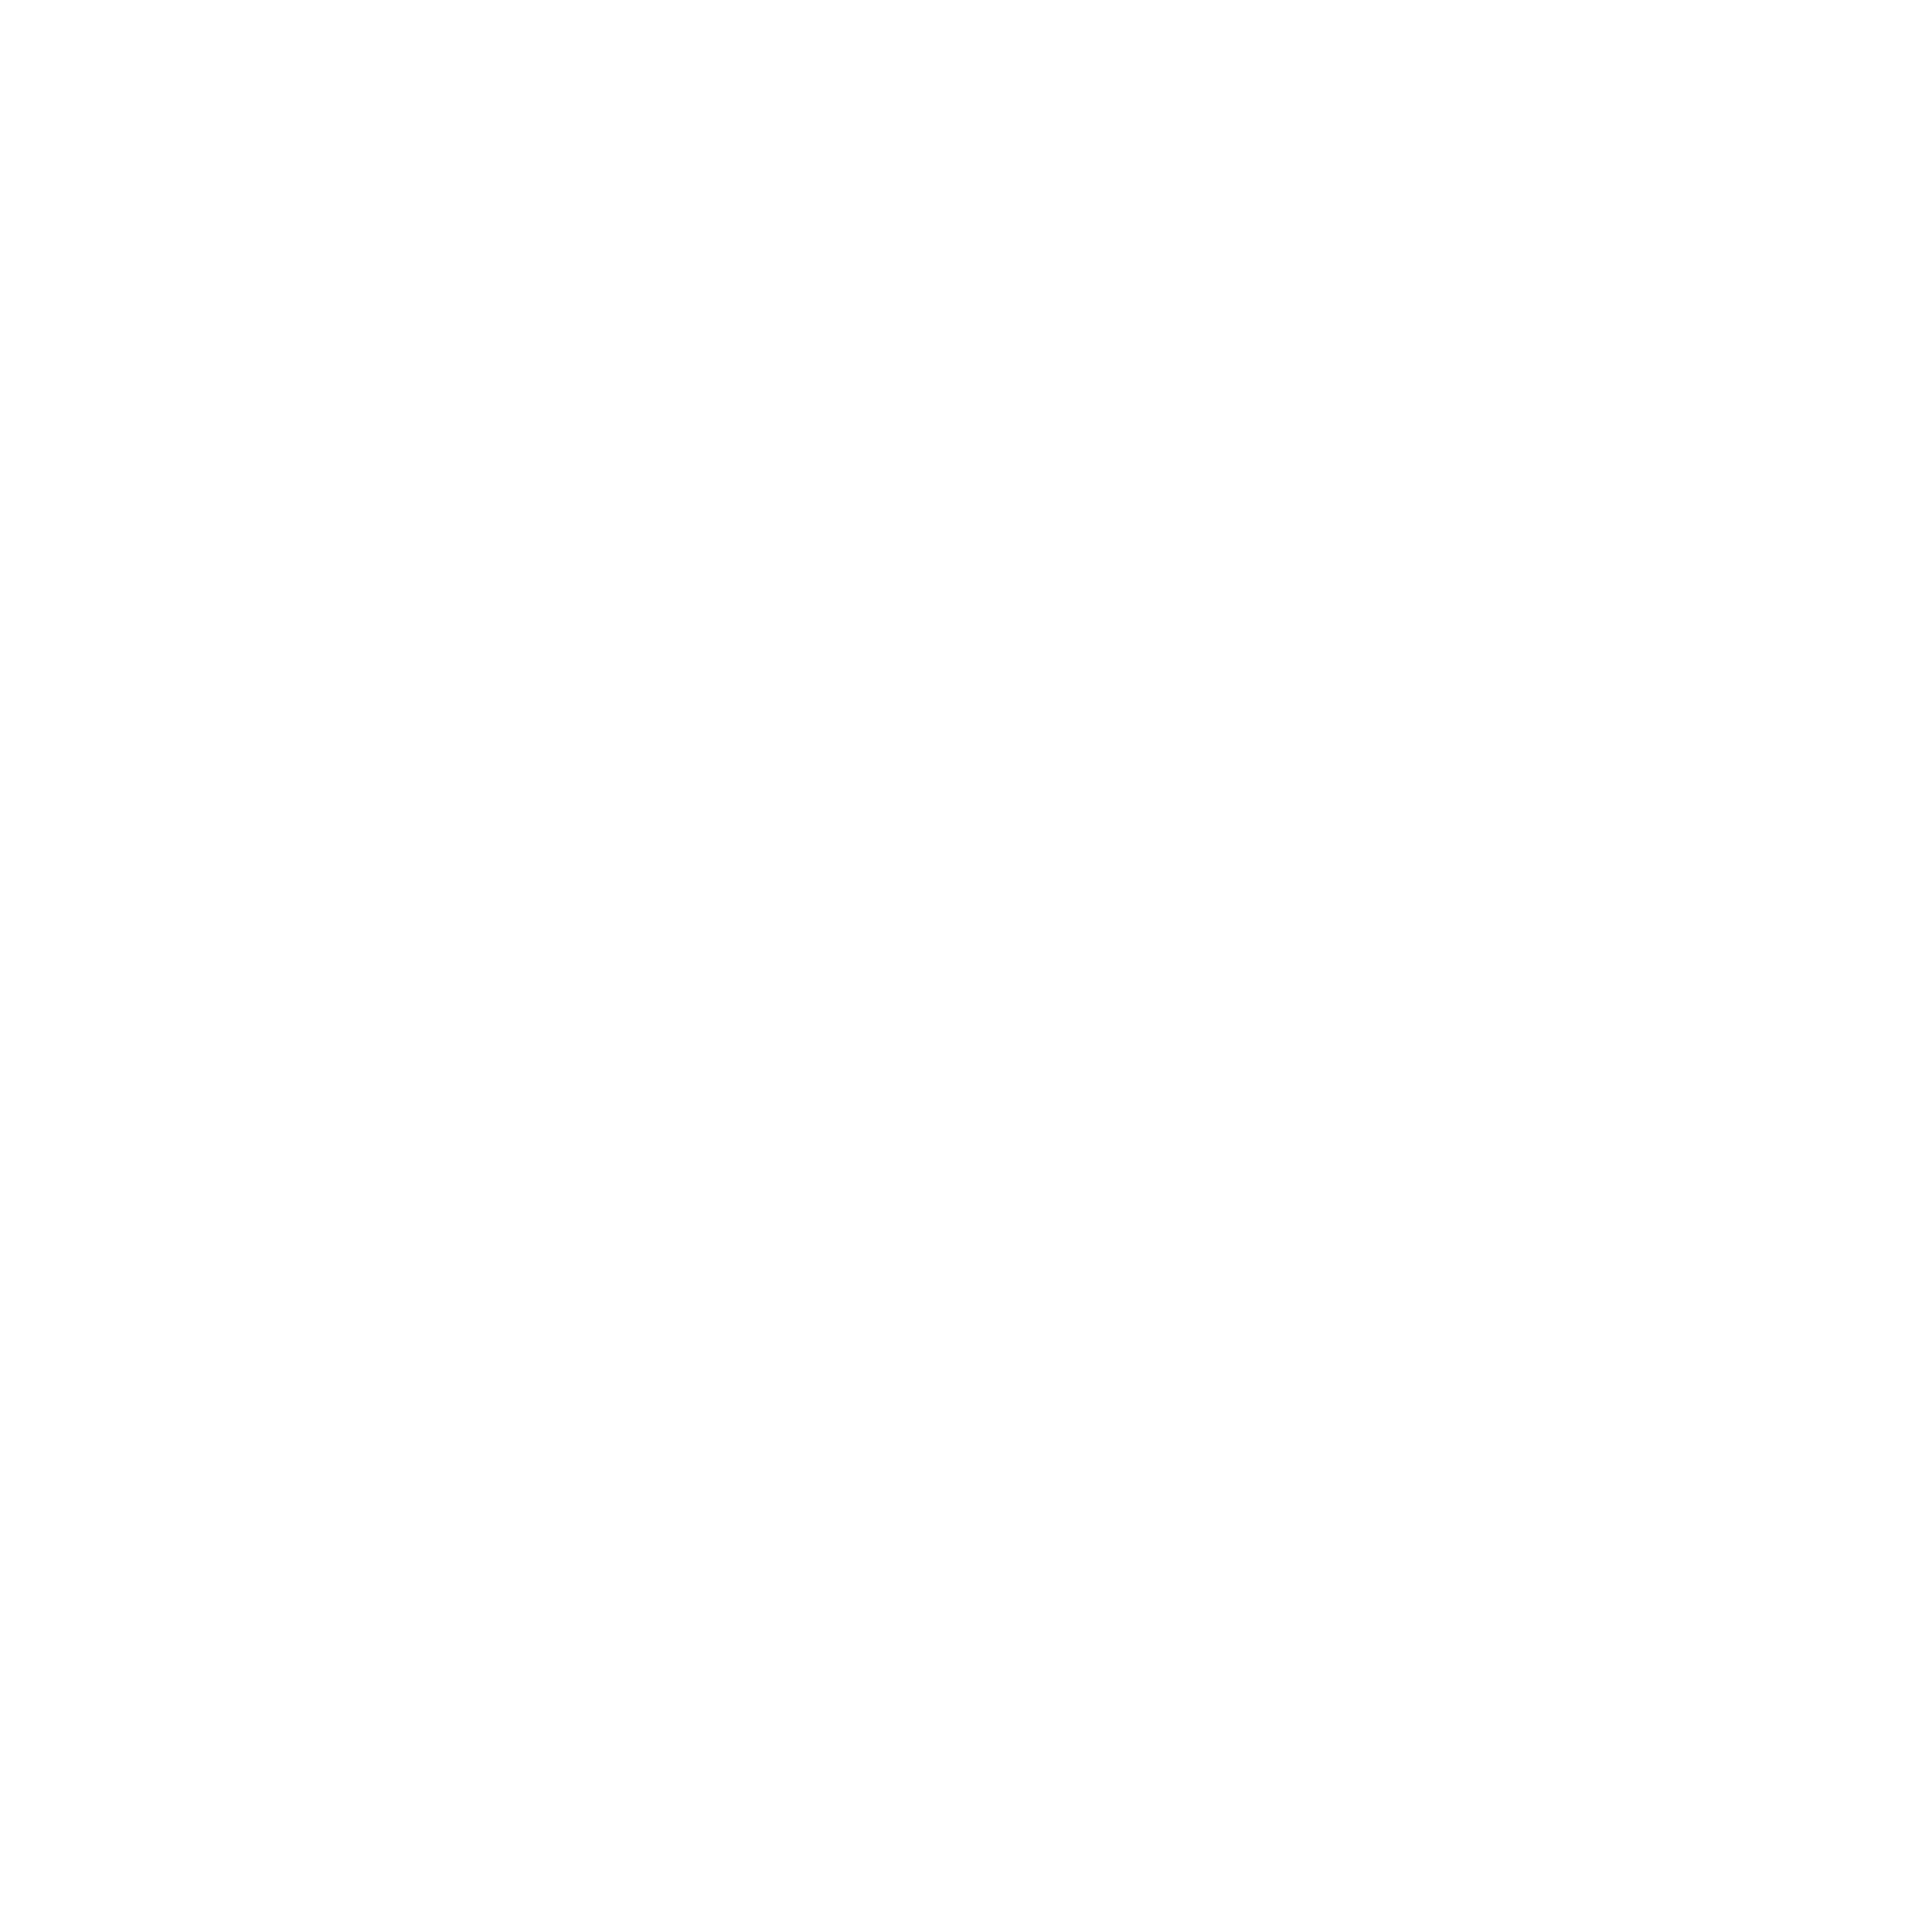 cologne &amp; Cognac Entertainment